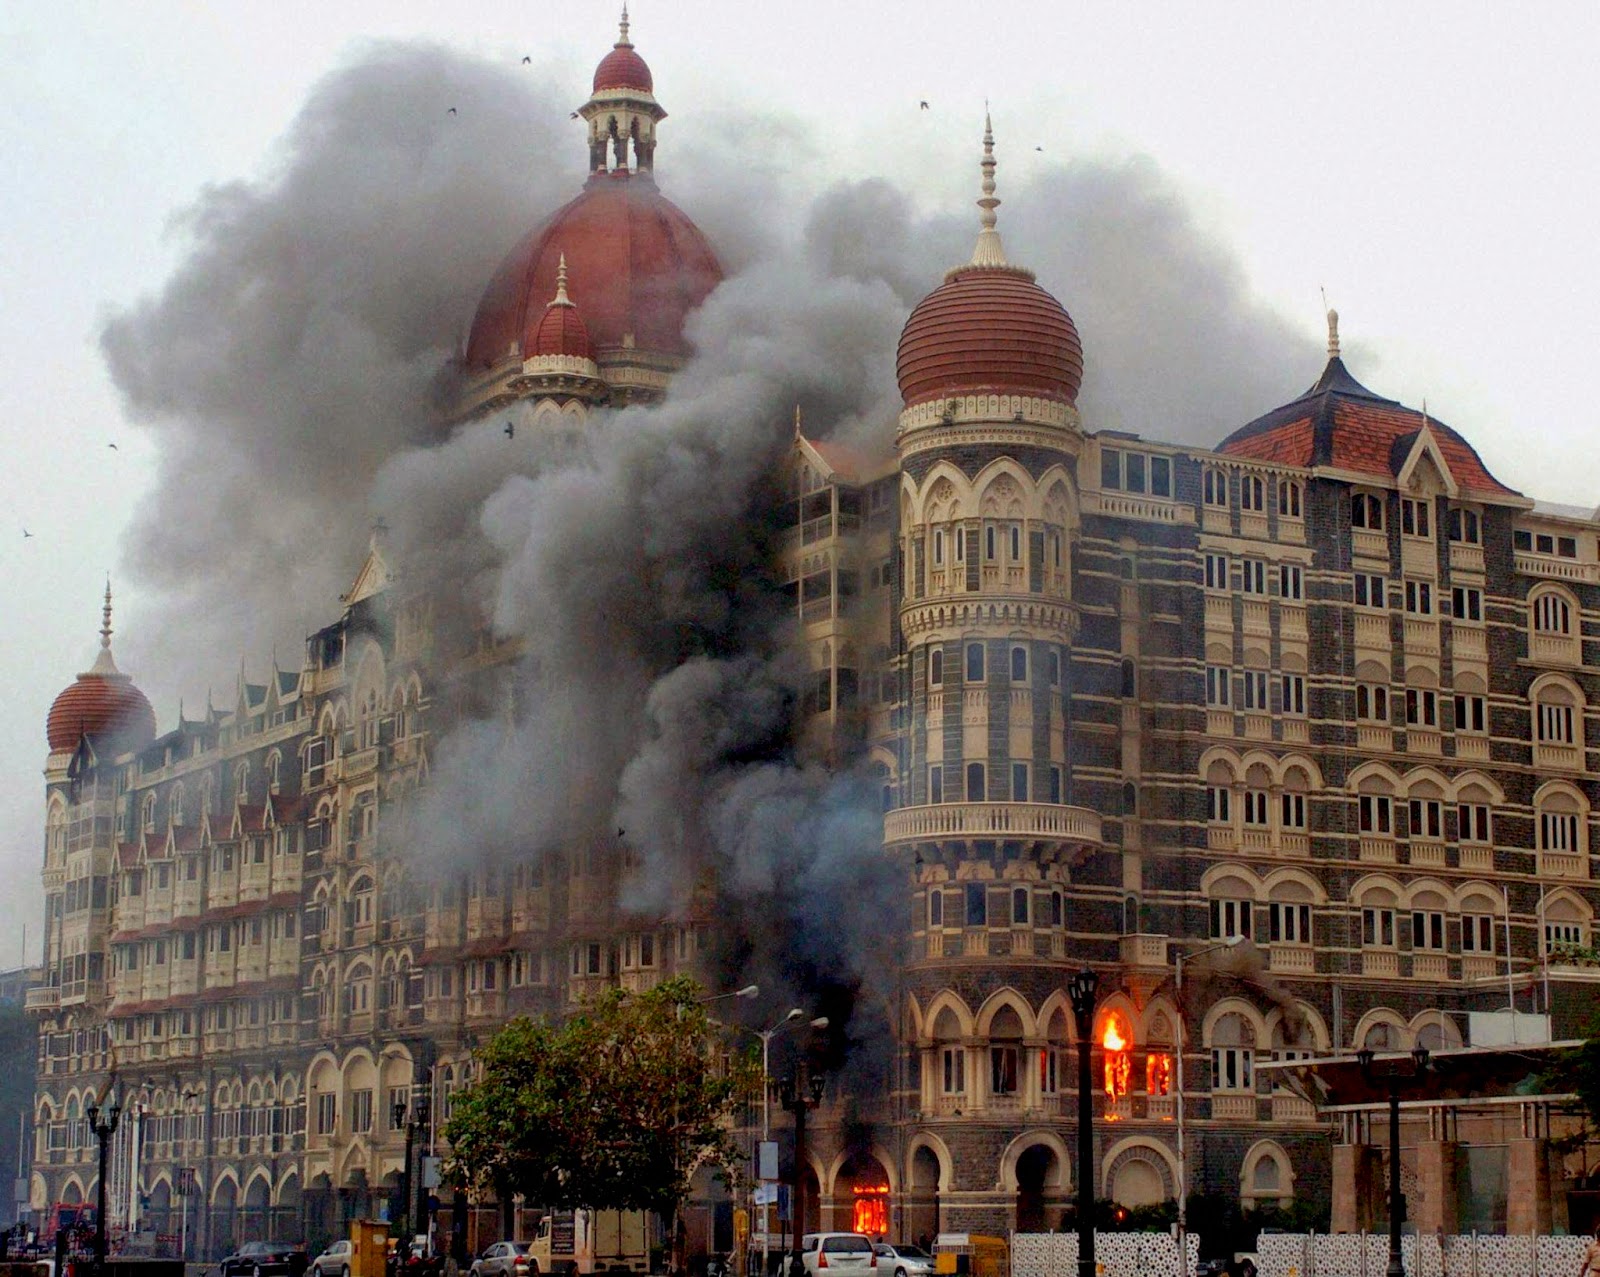 त्यो फोन रेकर्डिङ जसले मुम्बई हमला कसले गराएको प्रमाण दिन्छ